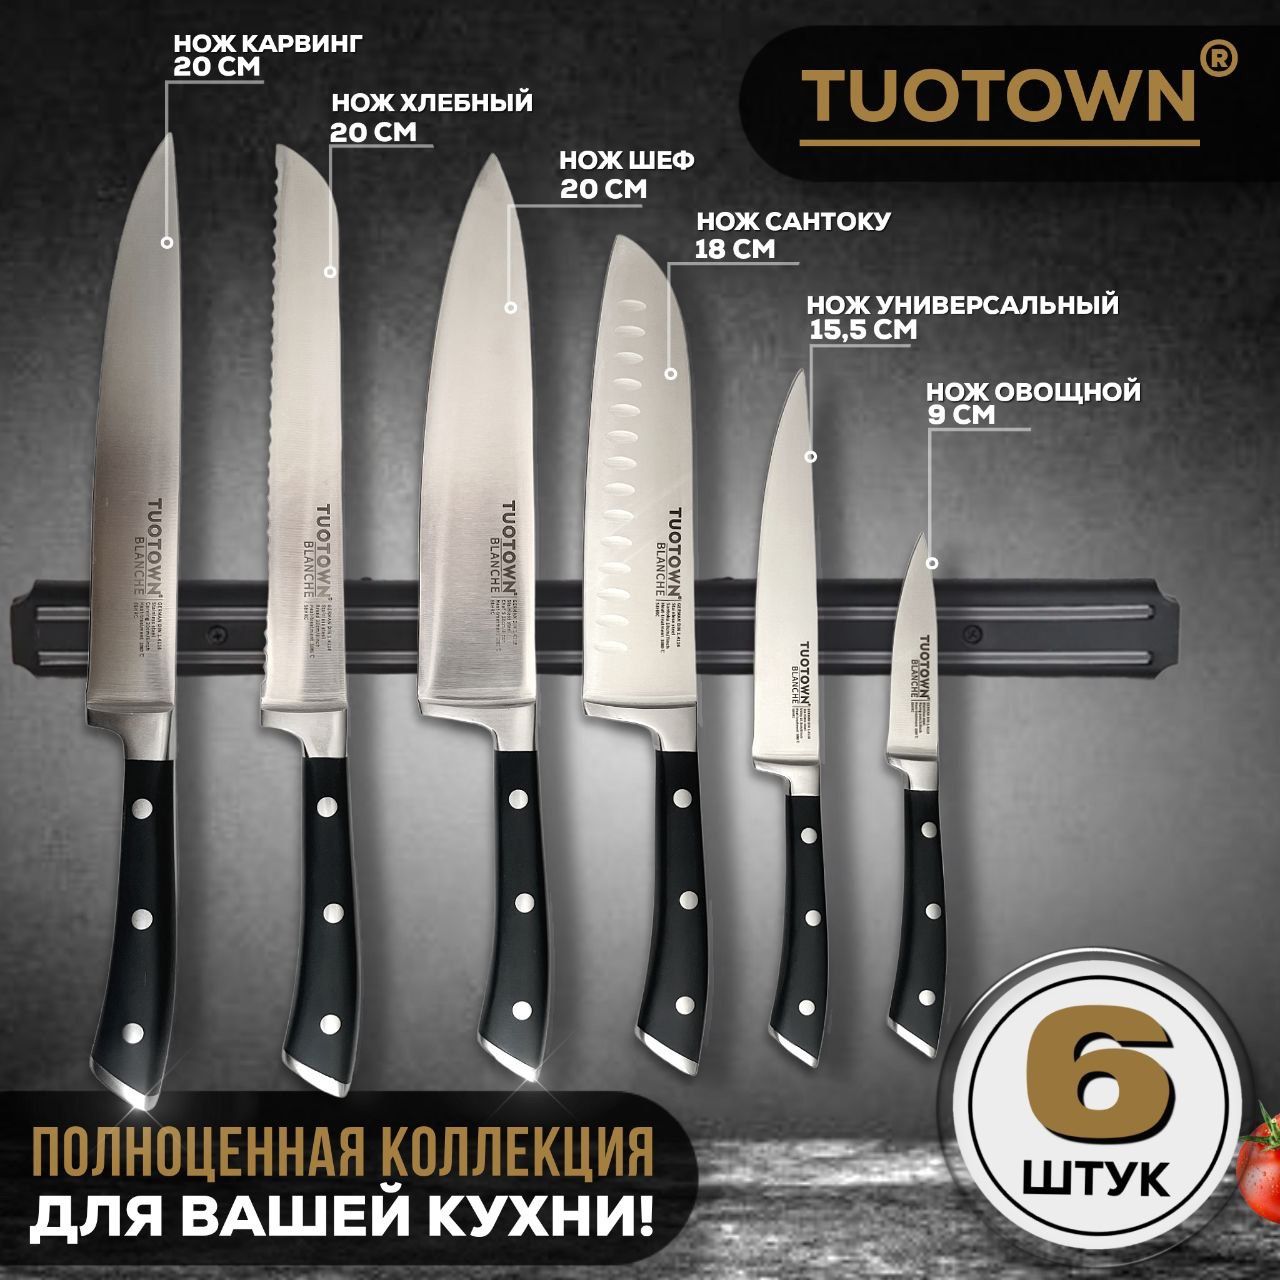 Ножи tuotown купить. TUOTOWN ножи. Ножи в коробке TUOTOWN. TUOTOWN обвалочный. Нож TUOTOWN 15 см.